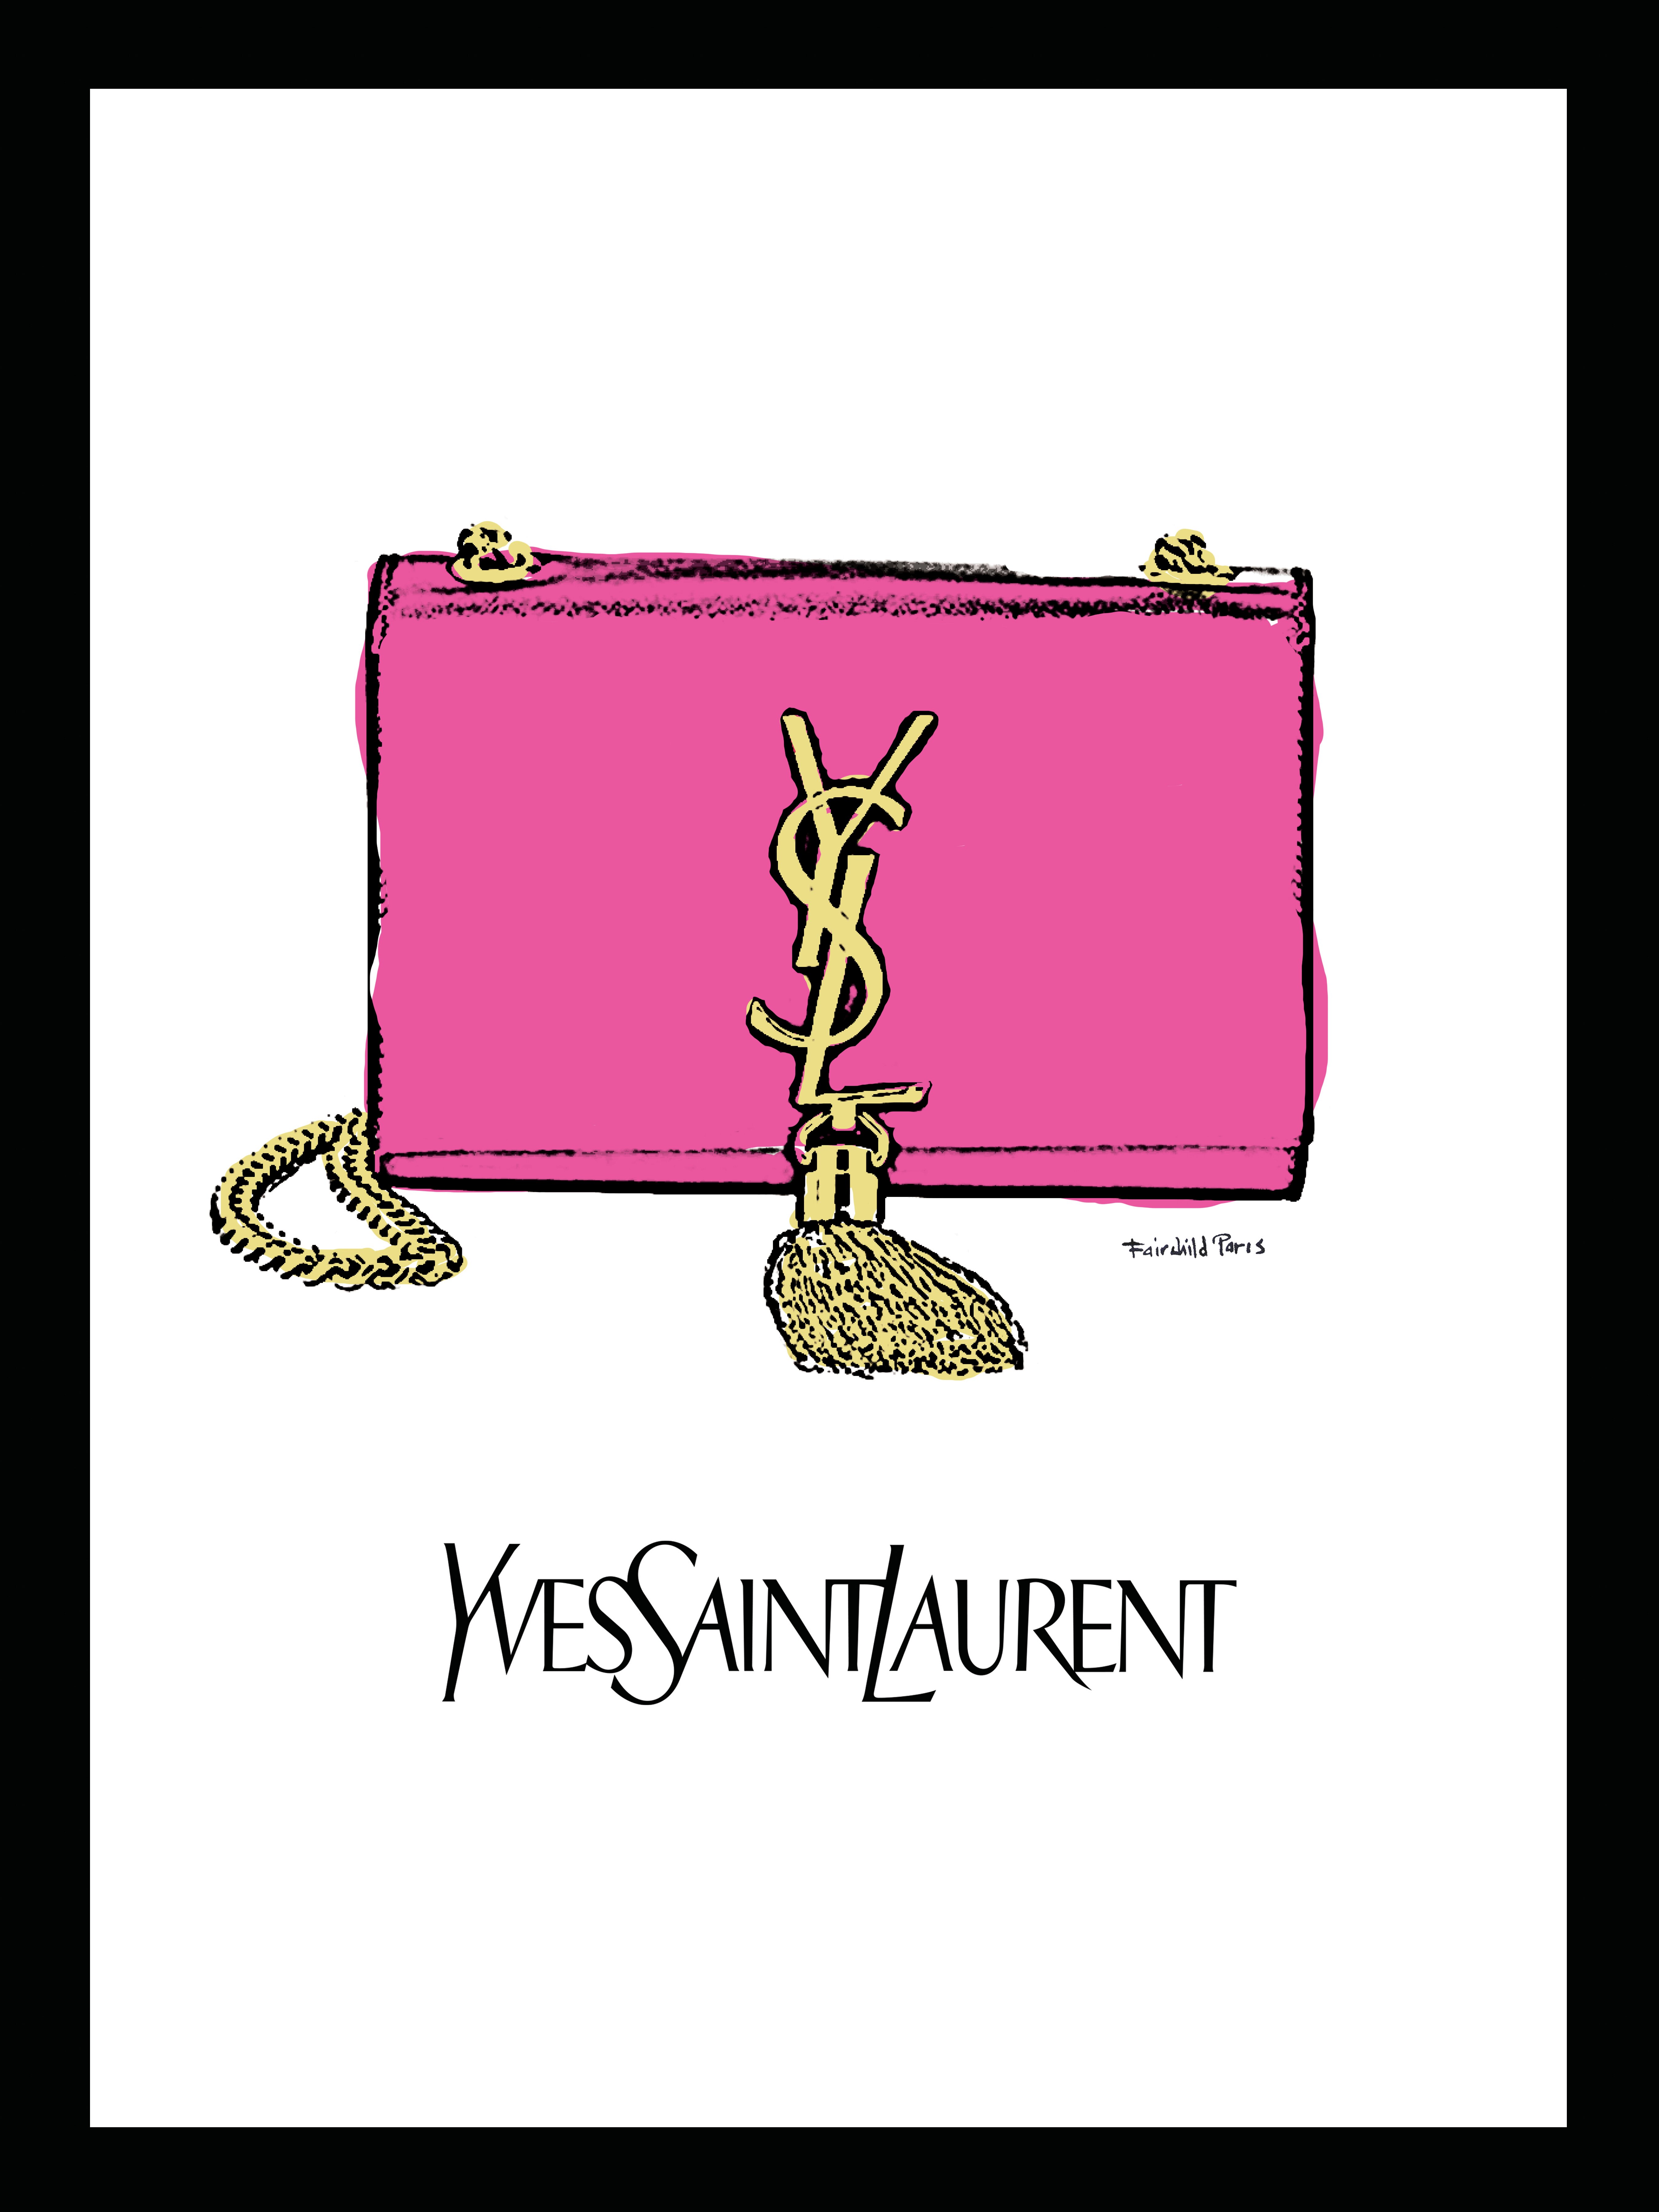 Saint Laurent Canvas Exterior Tote Bags & Handbags for Women for sale